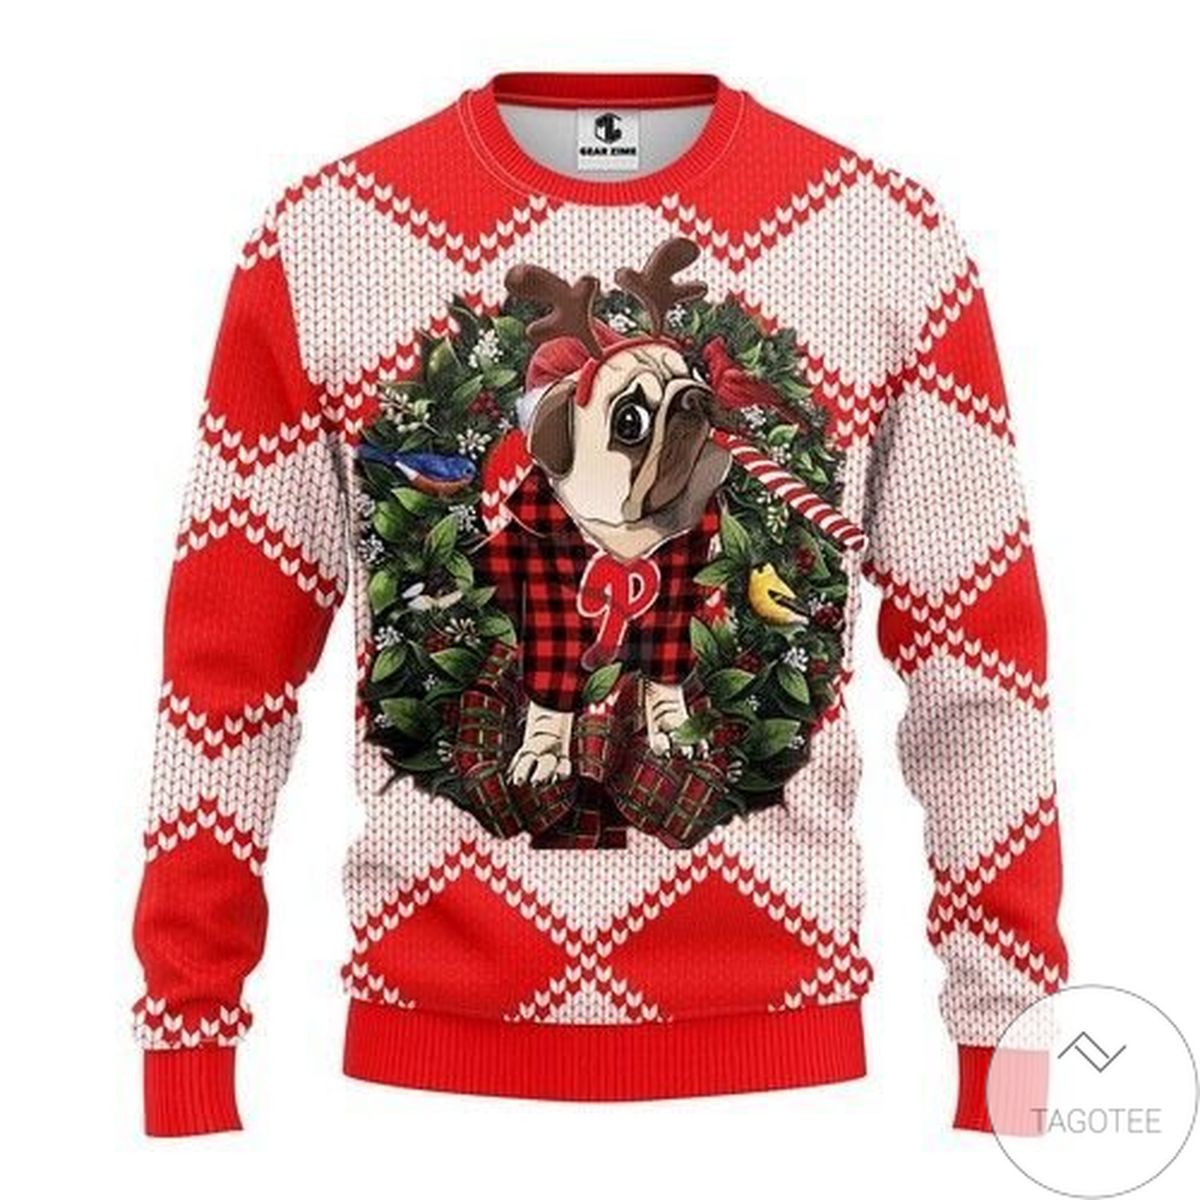 Mlb Philadelphia Phillies Pug Dog Ugly Christmas Sweater